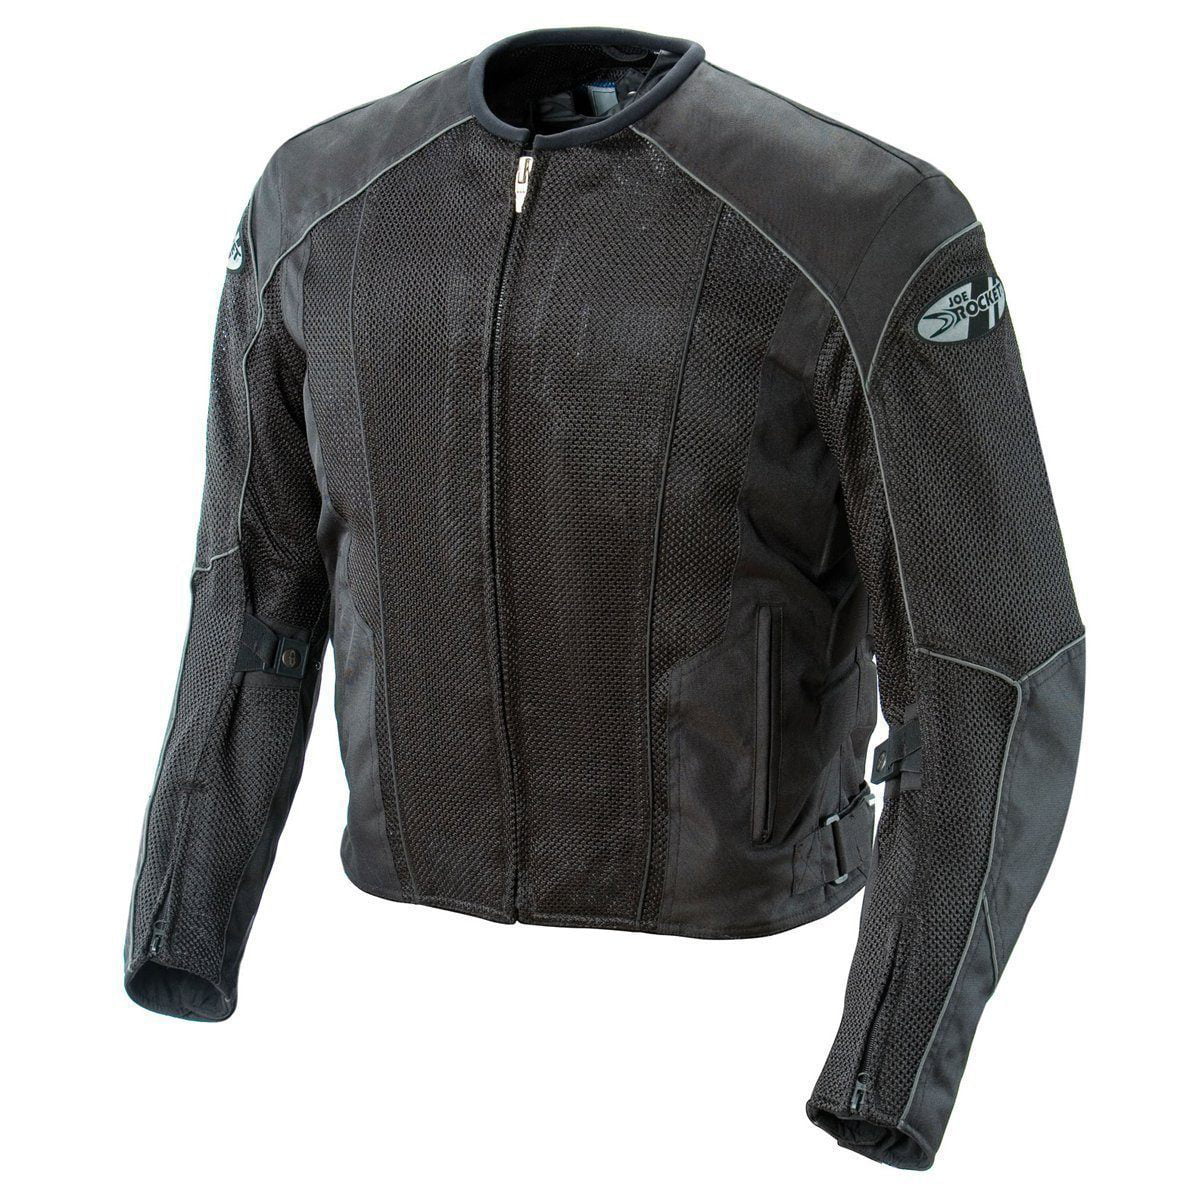 Joe Rocket 851-4317 Phoenix 5.0 Mens Mesh Motorcycle Riding Jacket Gray/Black, XXX-Large Tall 